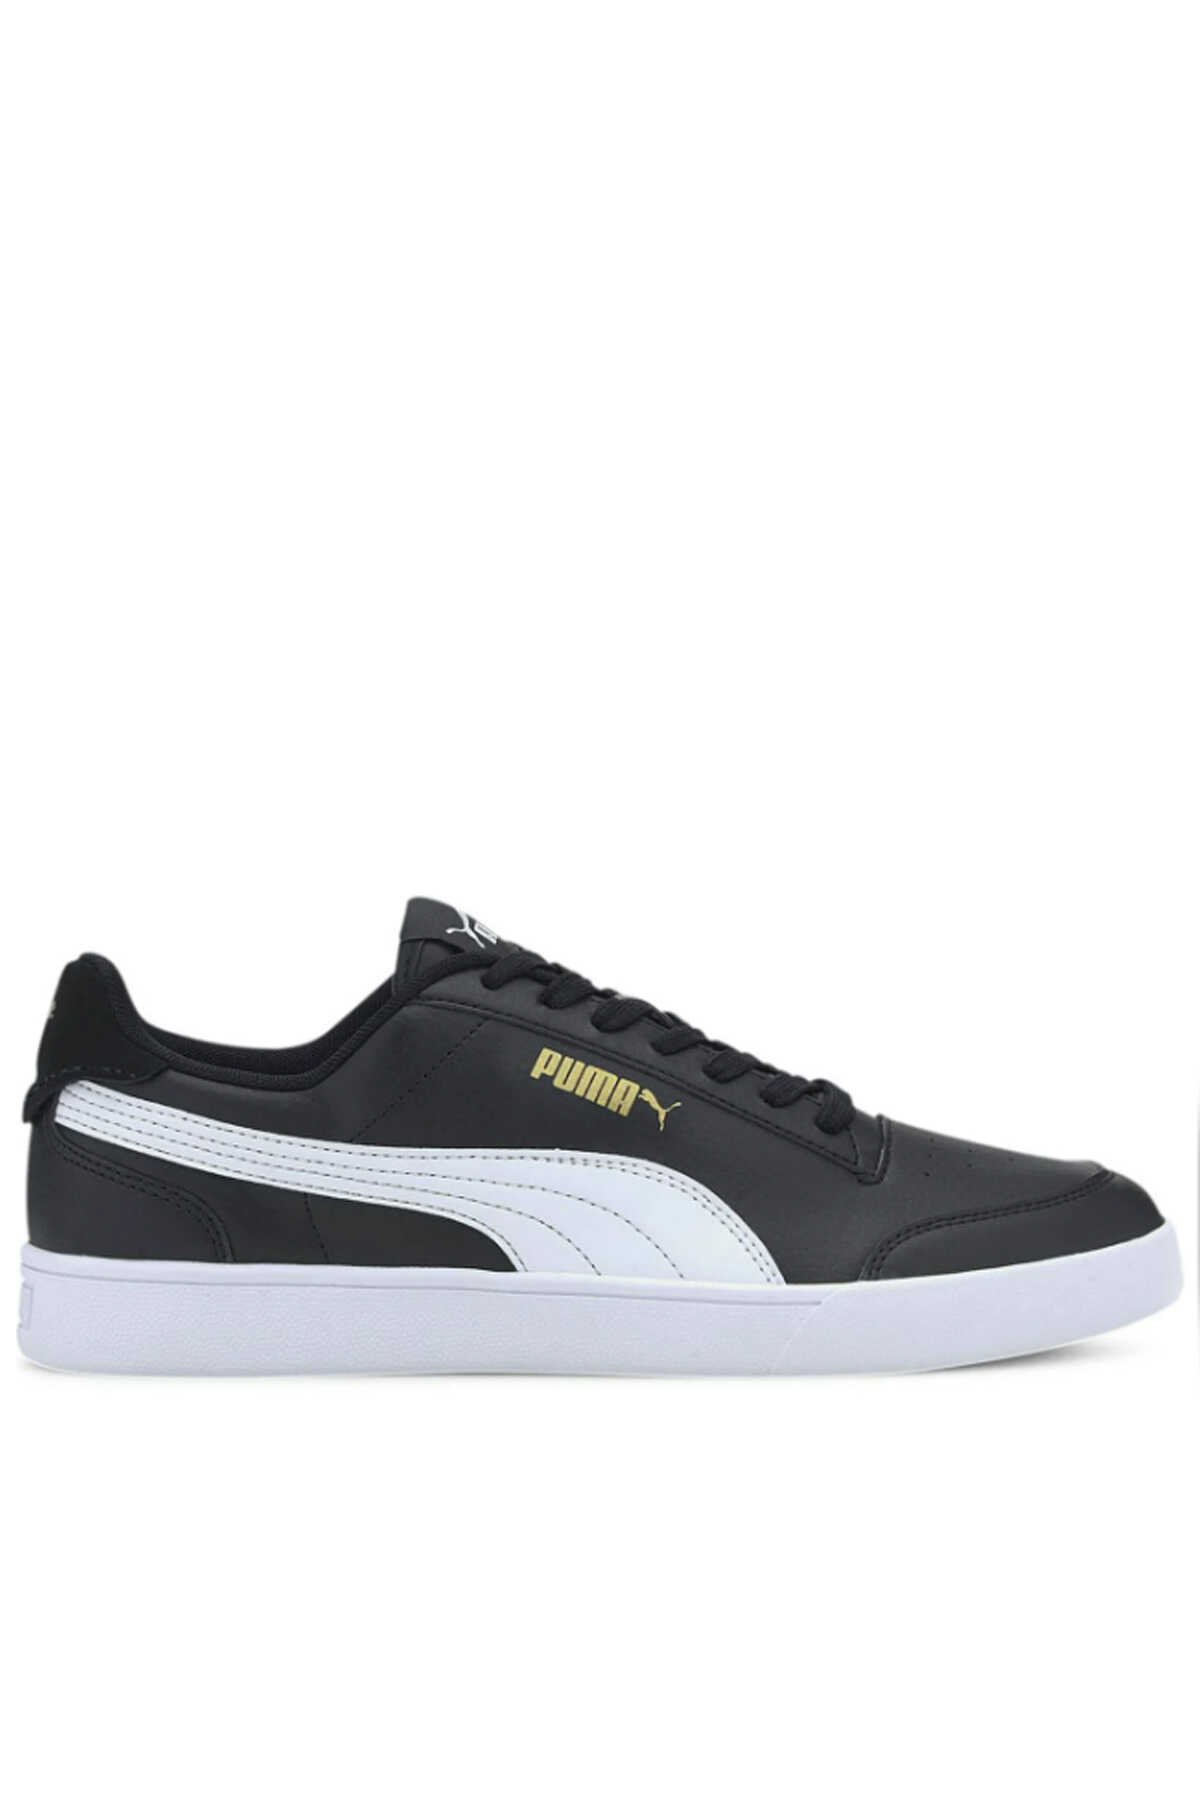 Puma - Puma Shuffle Erkek Sneaker Ayakkabı Siyah / Beyaz